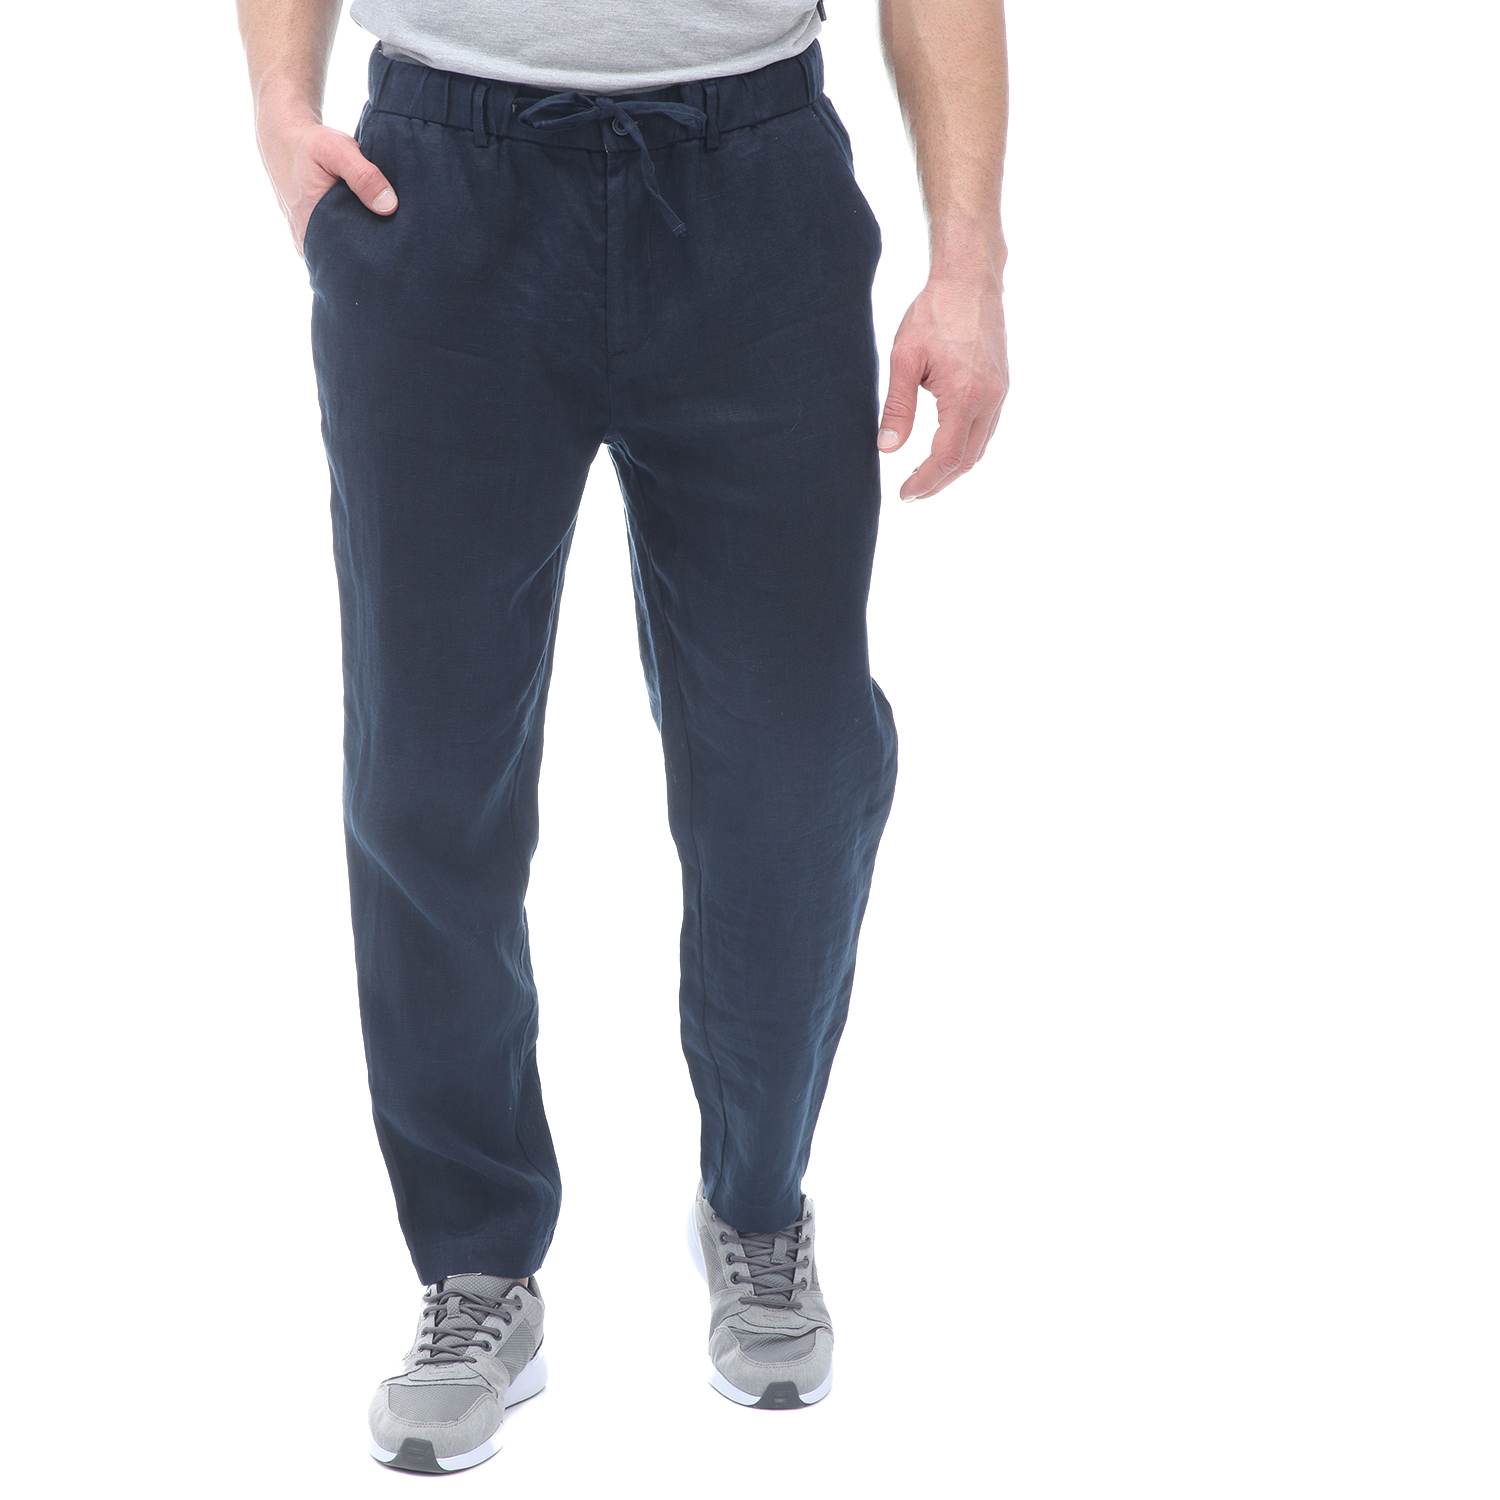 Ανδρικά/Ρούχα/Παντελόνια/Ισια Γραμμή SSEINSE - Ανδρικό παντελόνι SSEINSE μπλε